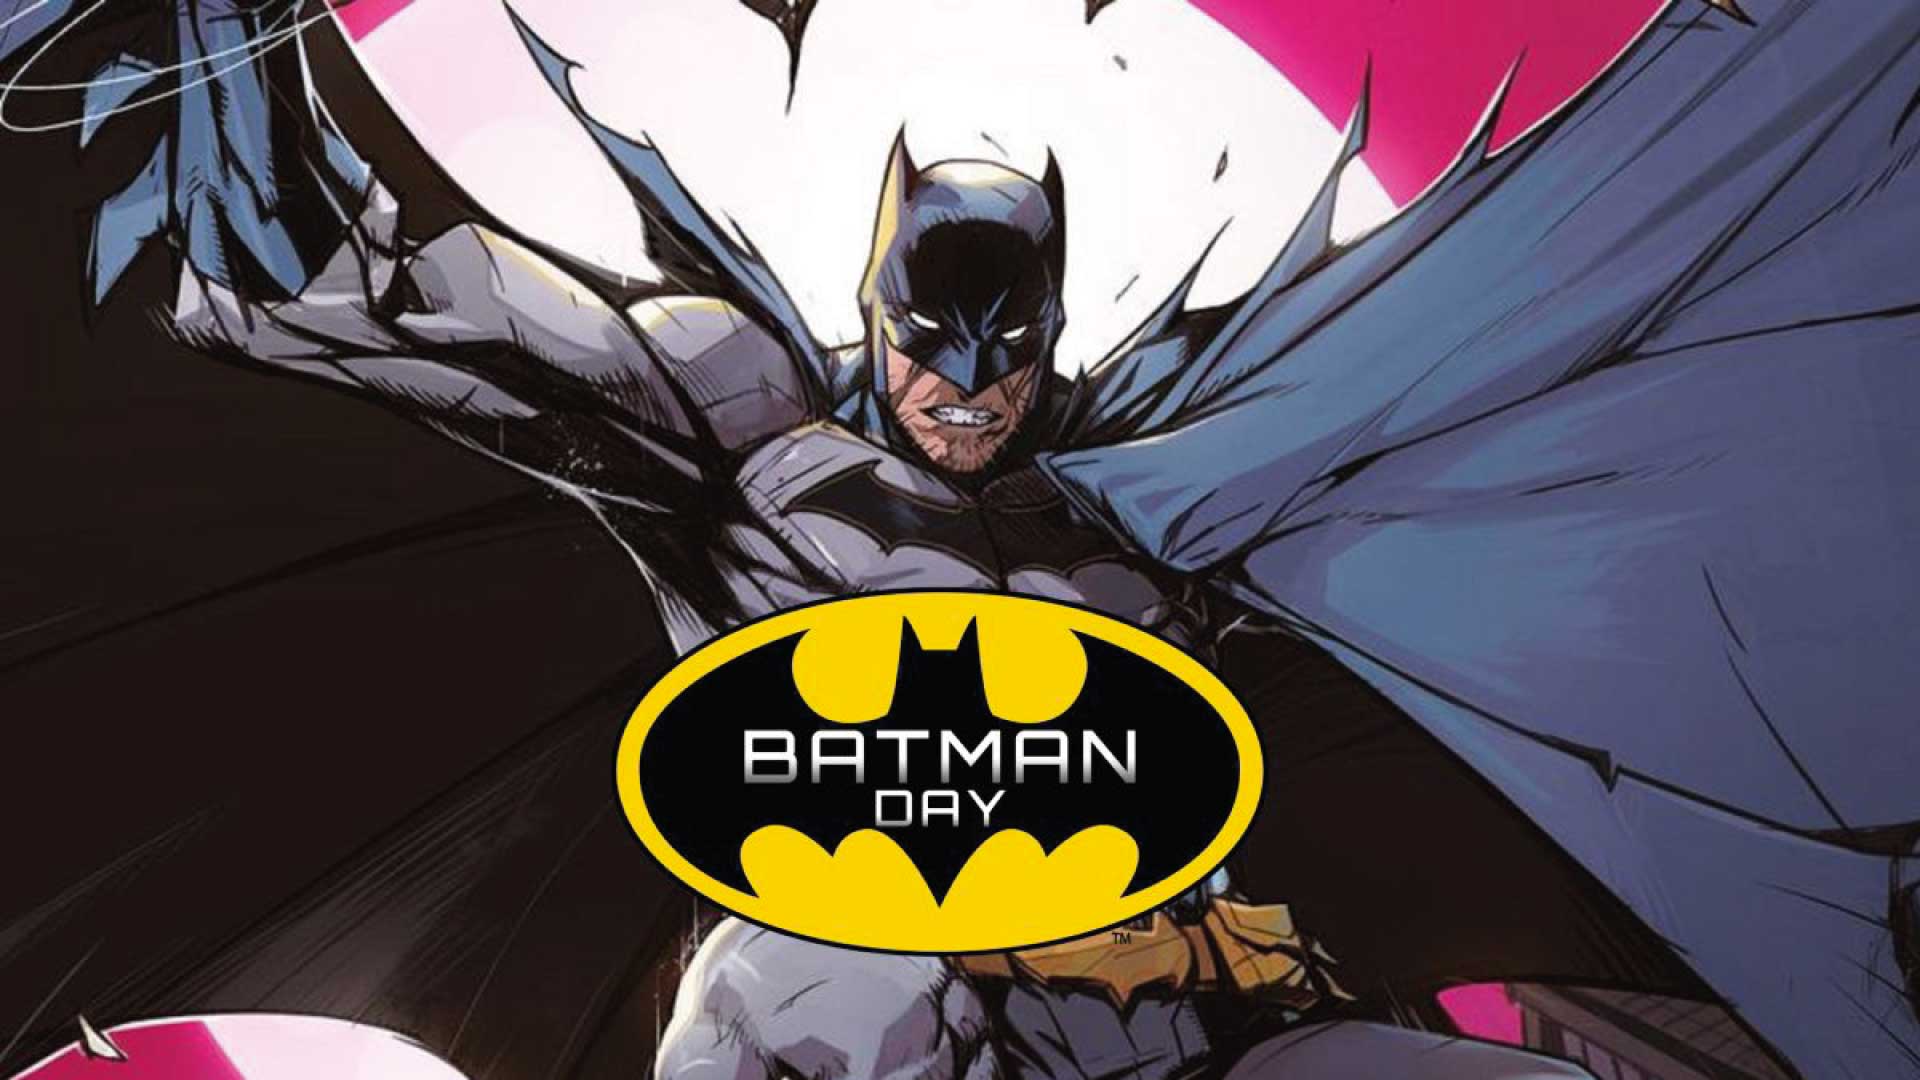 Llega el Batman Day y así lo celebrará HBO